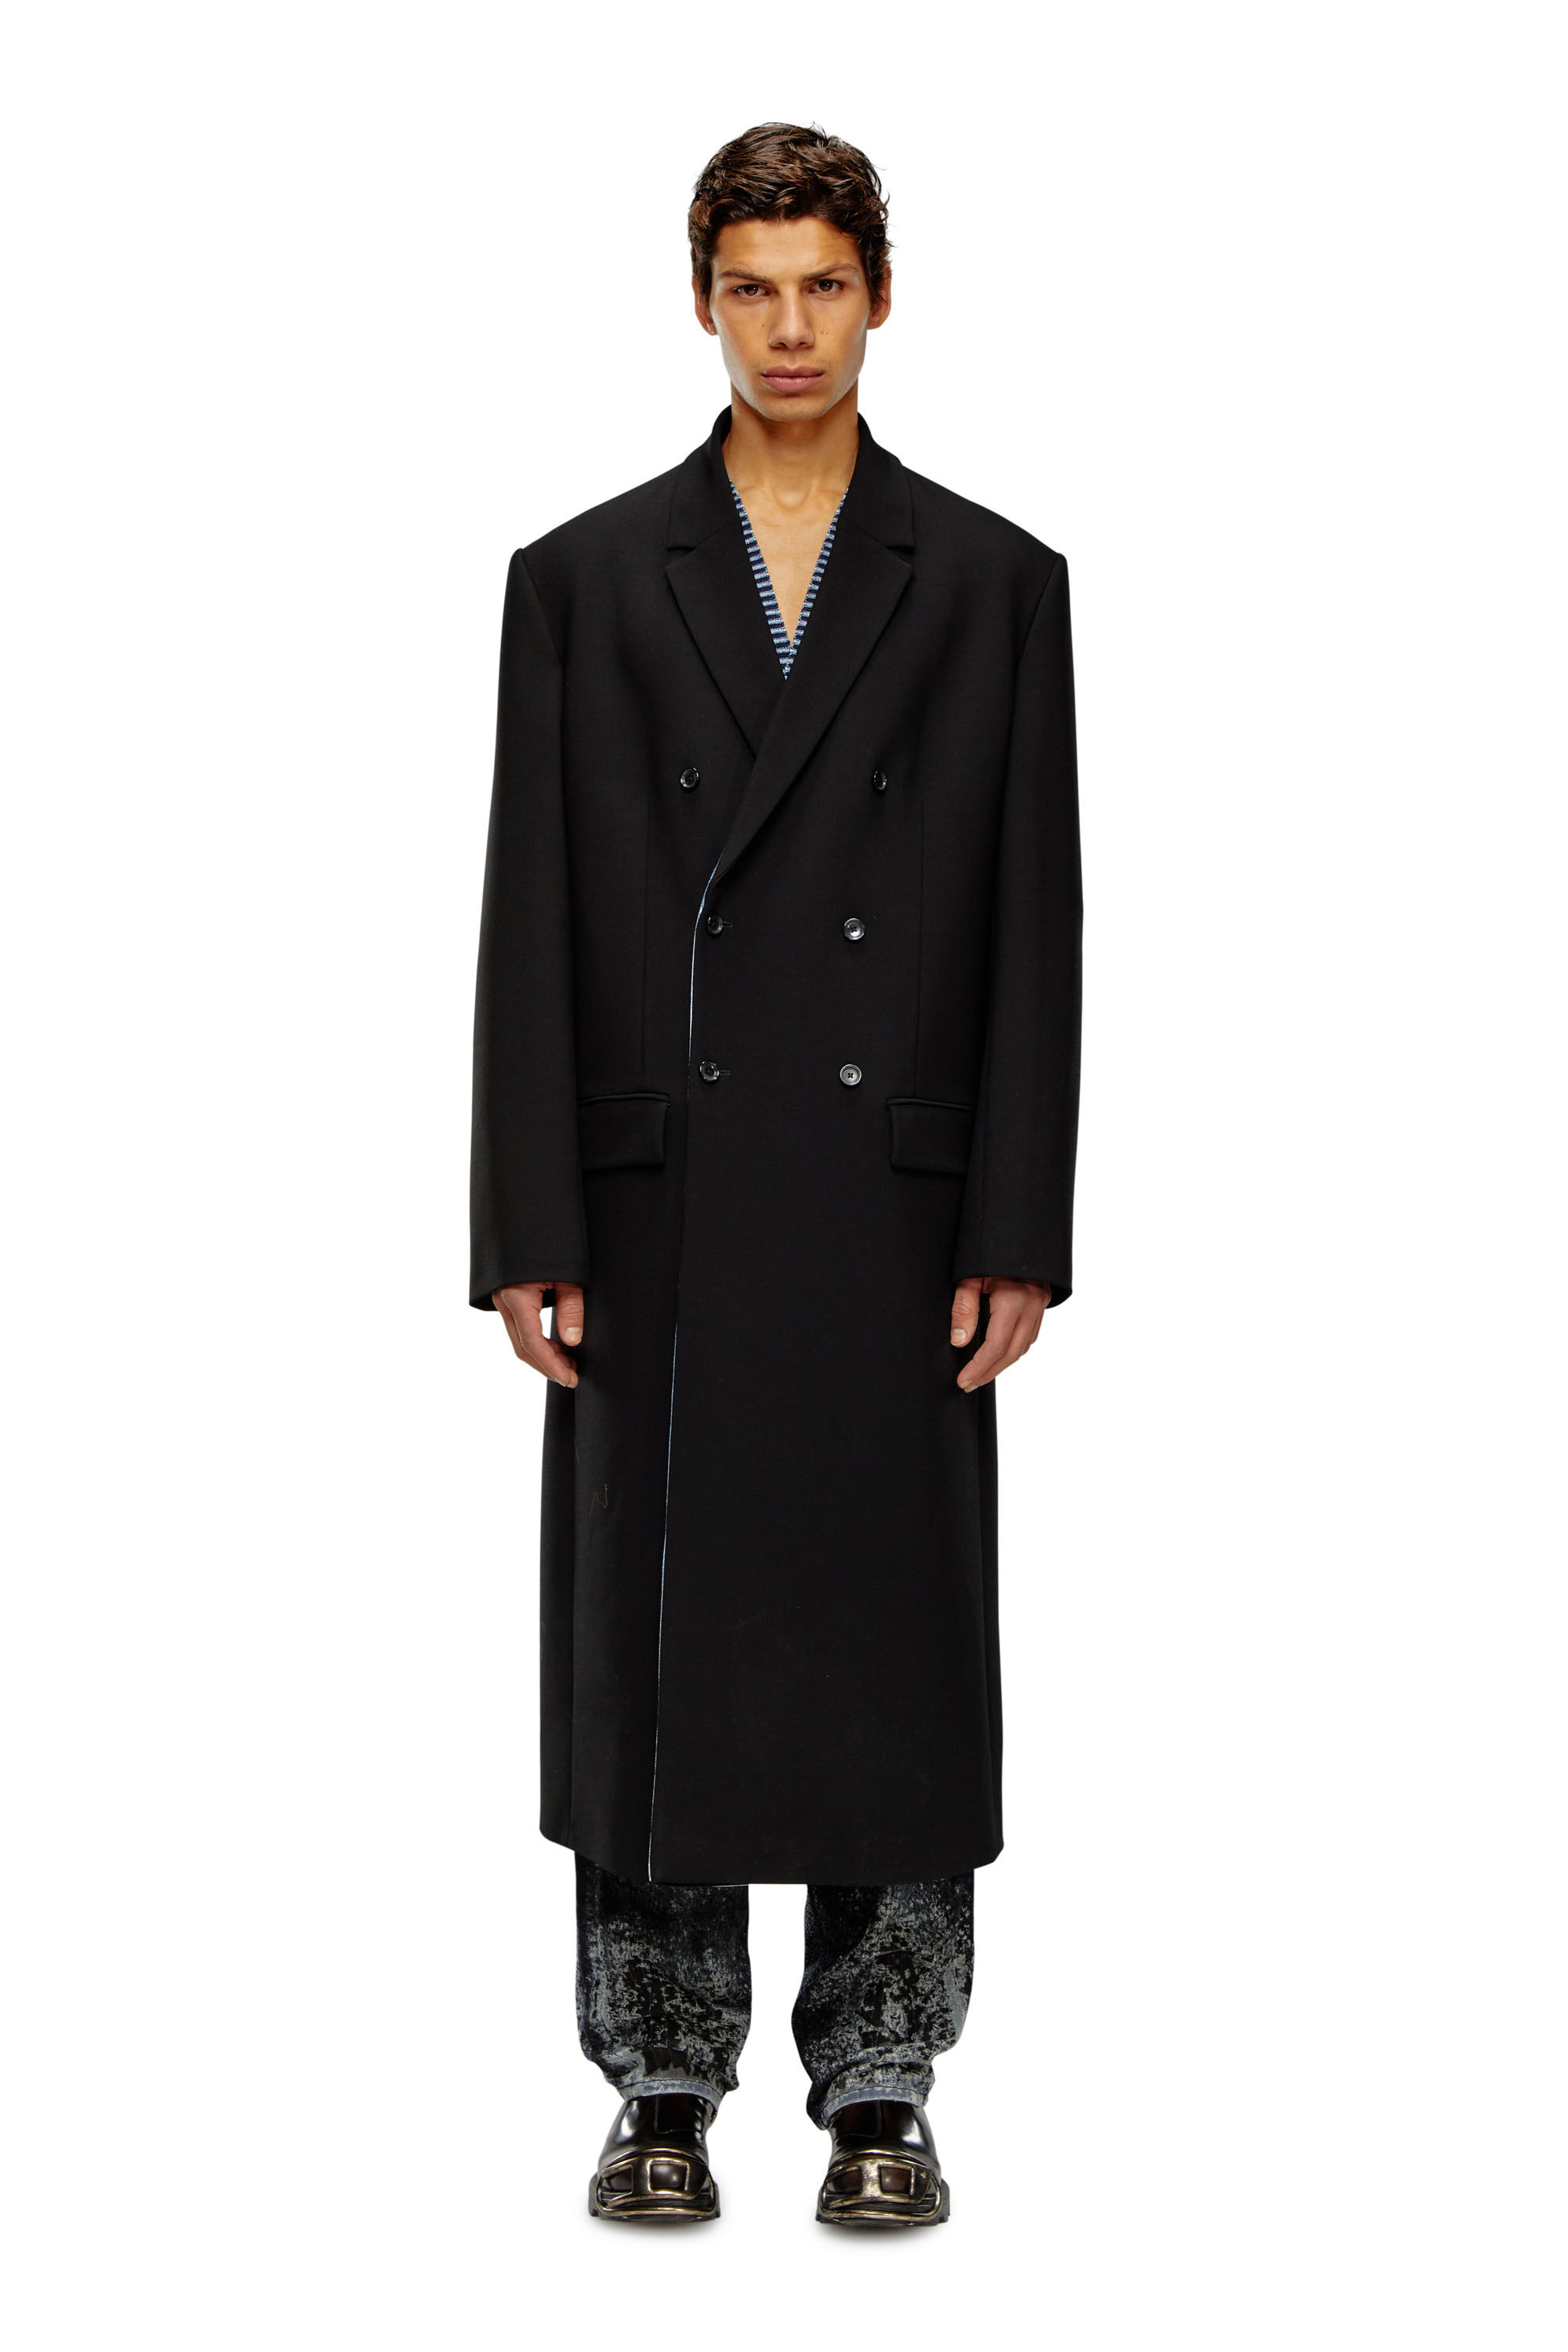 Diesel - J-RITZ, Man Longline cool wool coat in denim detail in Black - Image 1